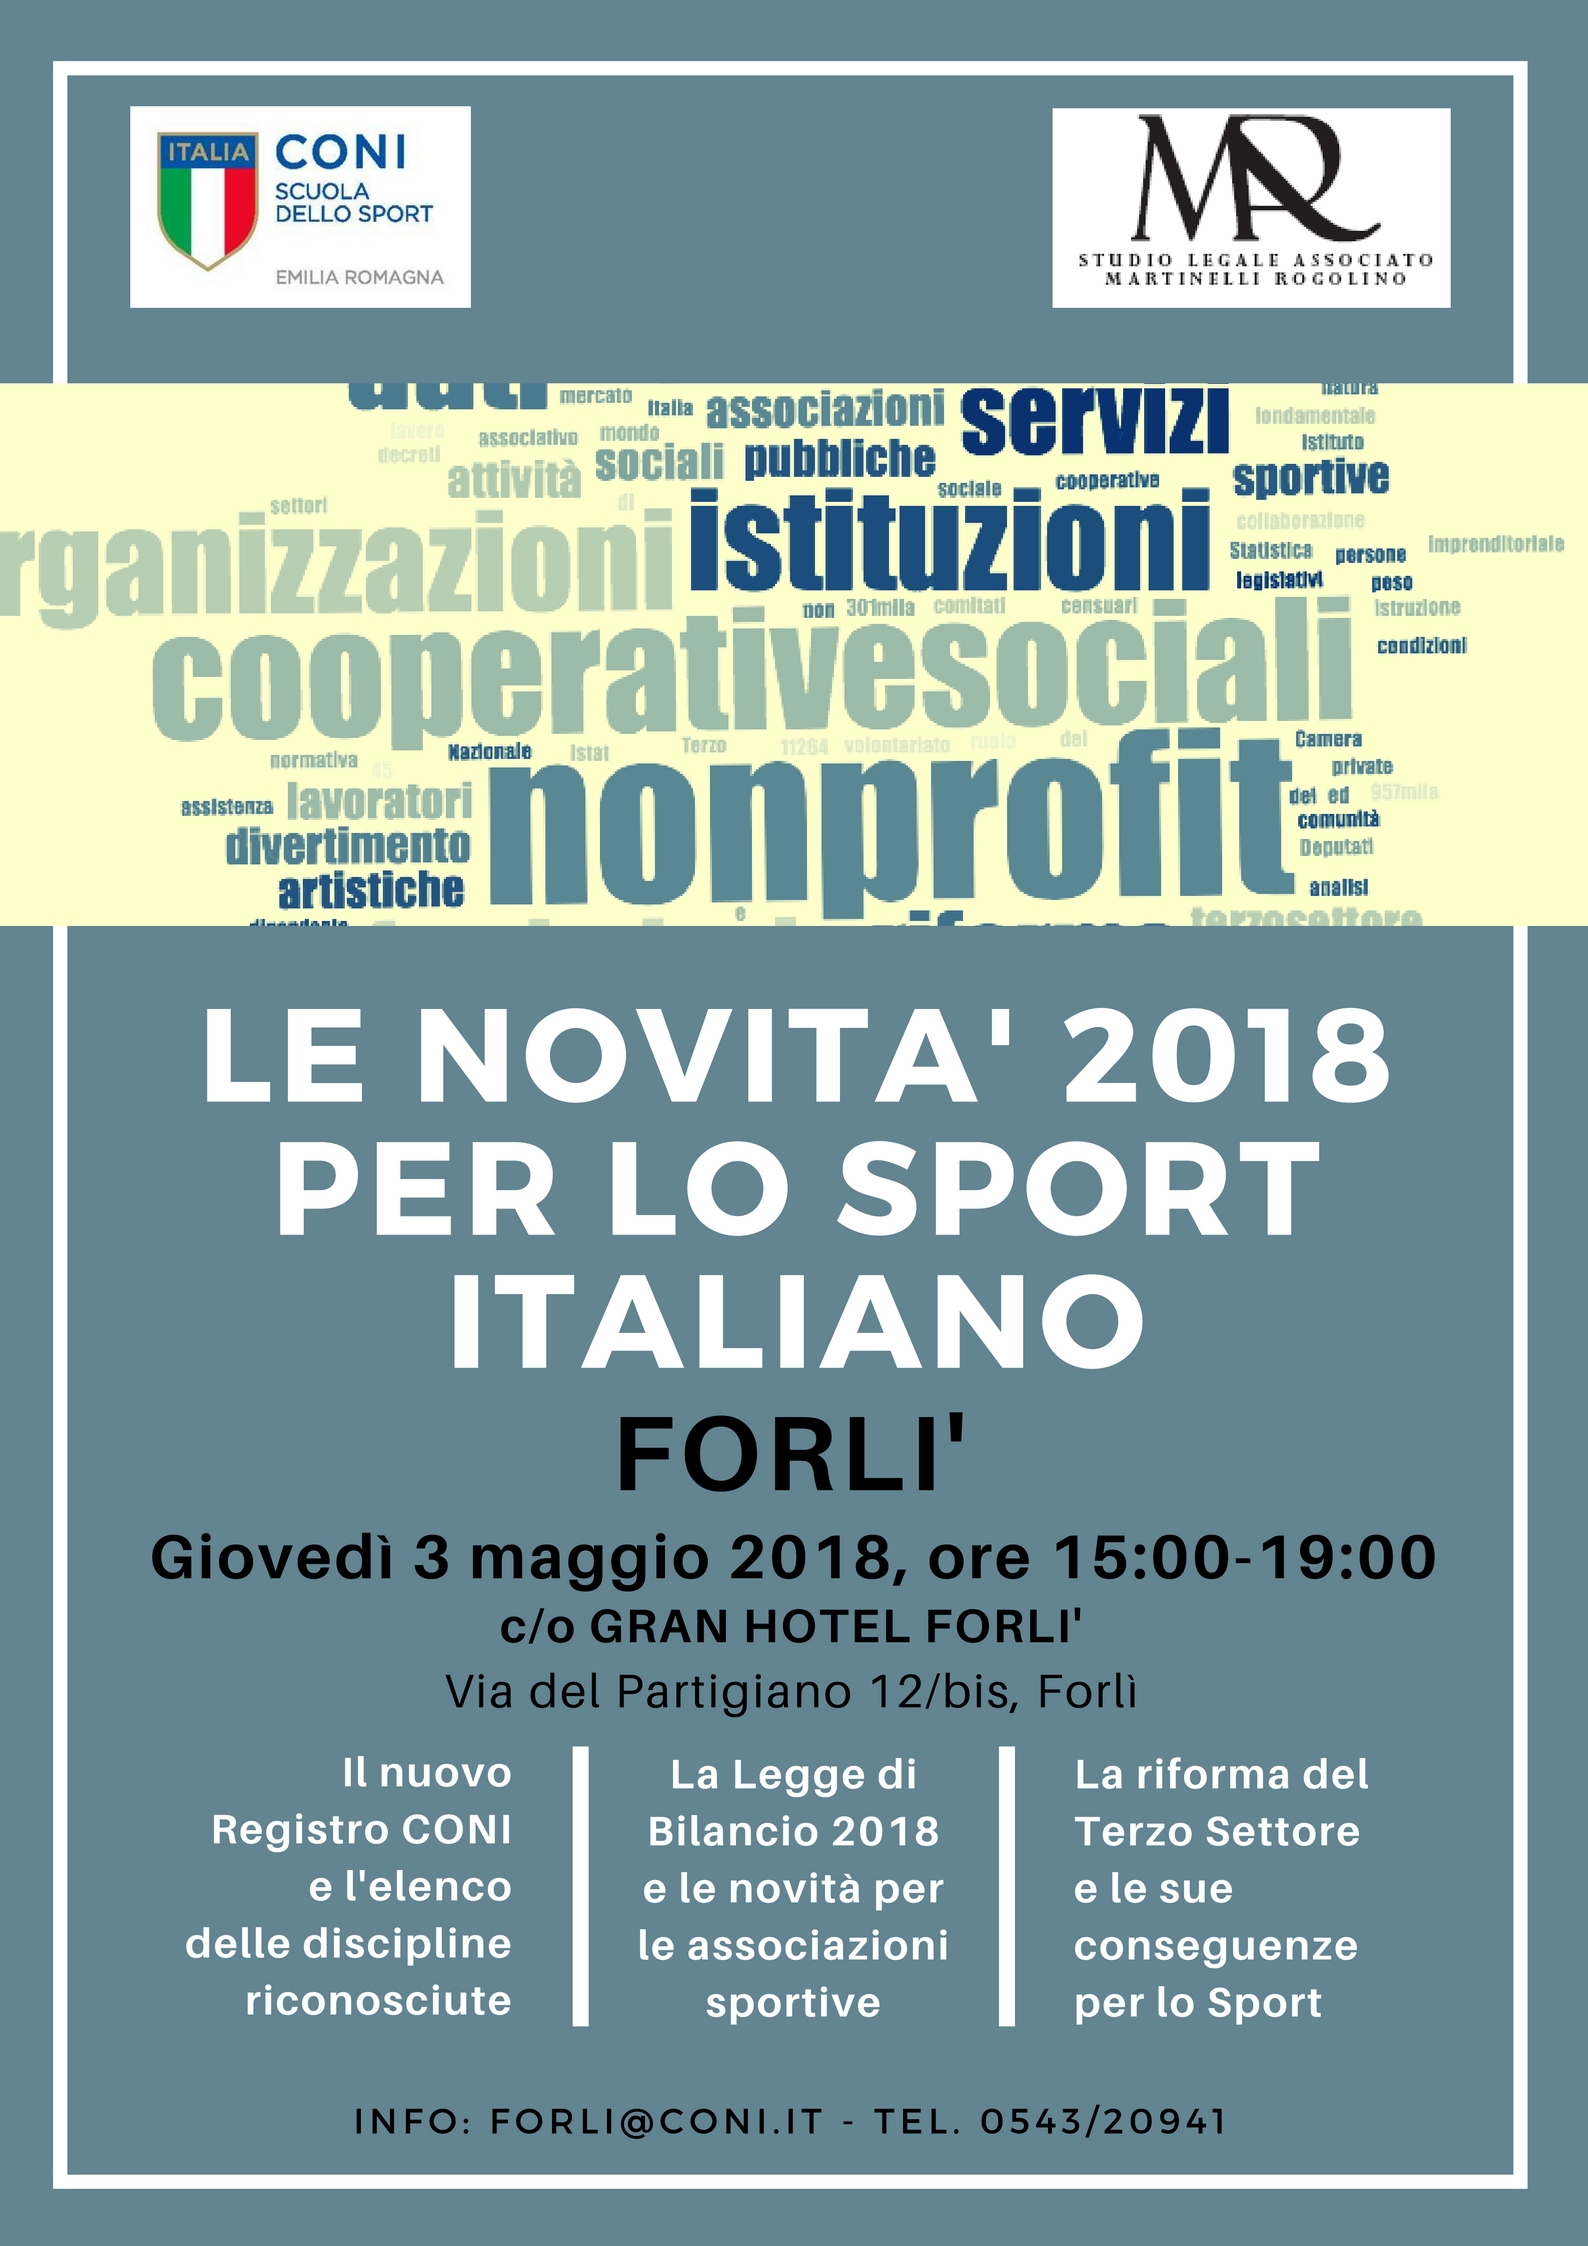 Le novità 2018 per lo sport italiano (seminario gratuito)